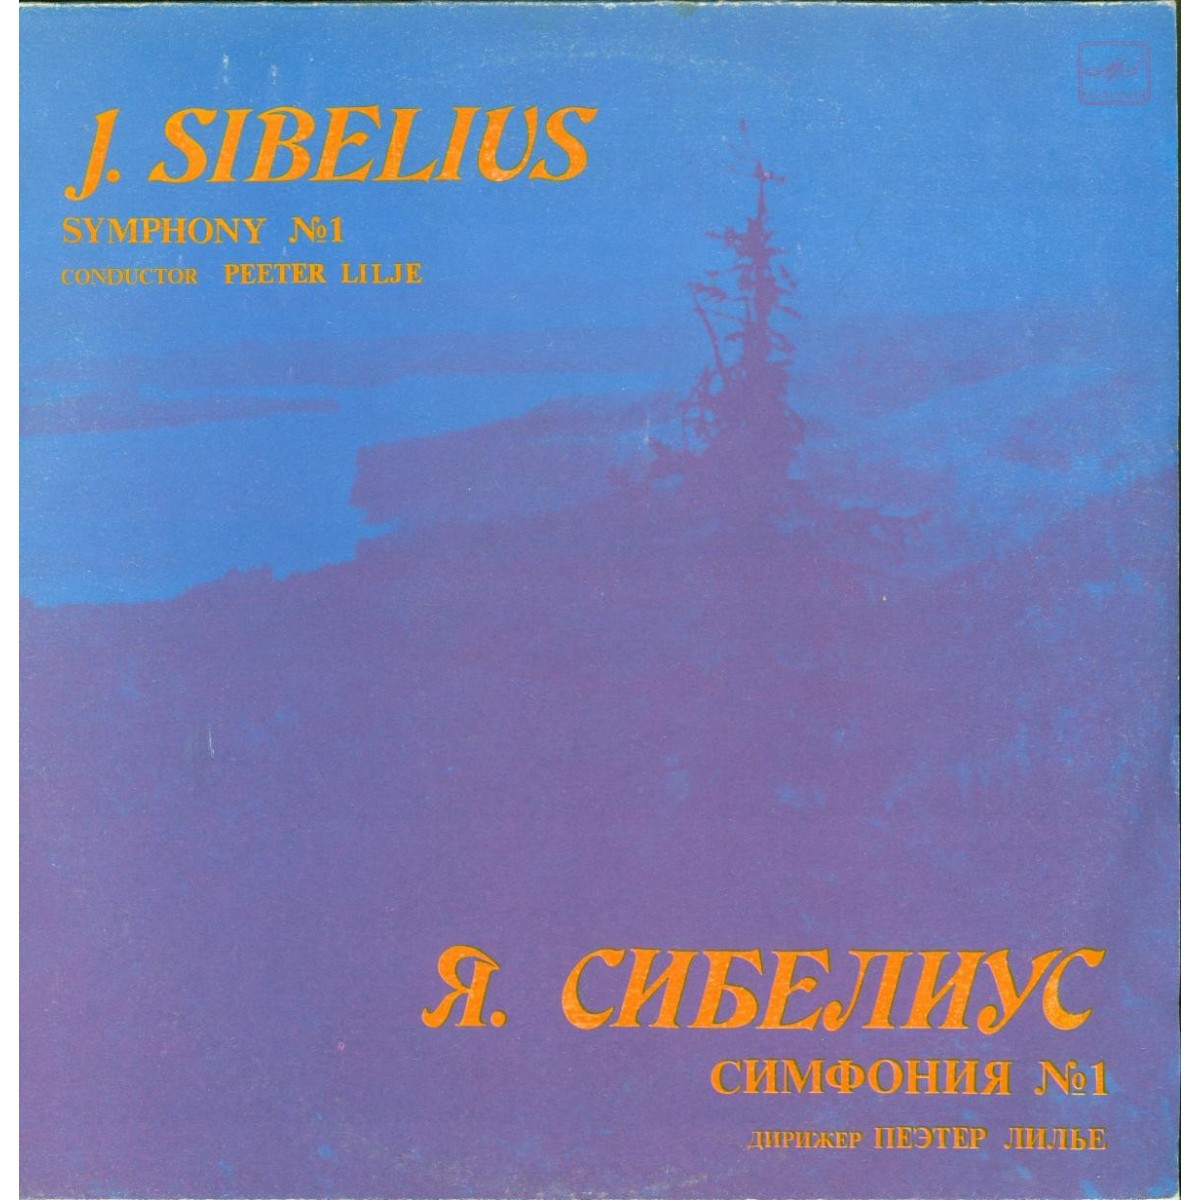 Я. СИБЕЛИУС (1865-1957): Симфония № 1 ми минор, соч. 39